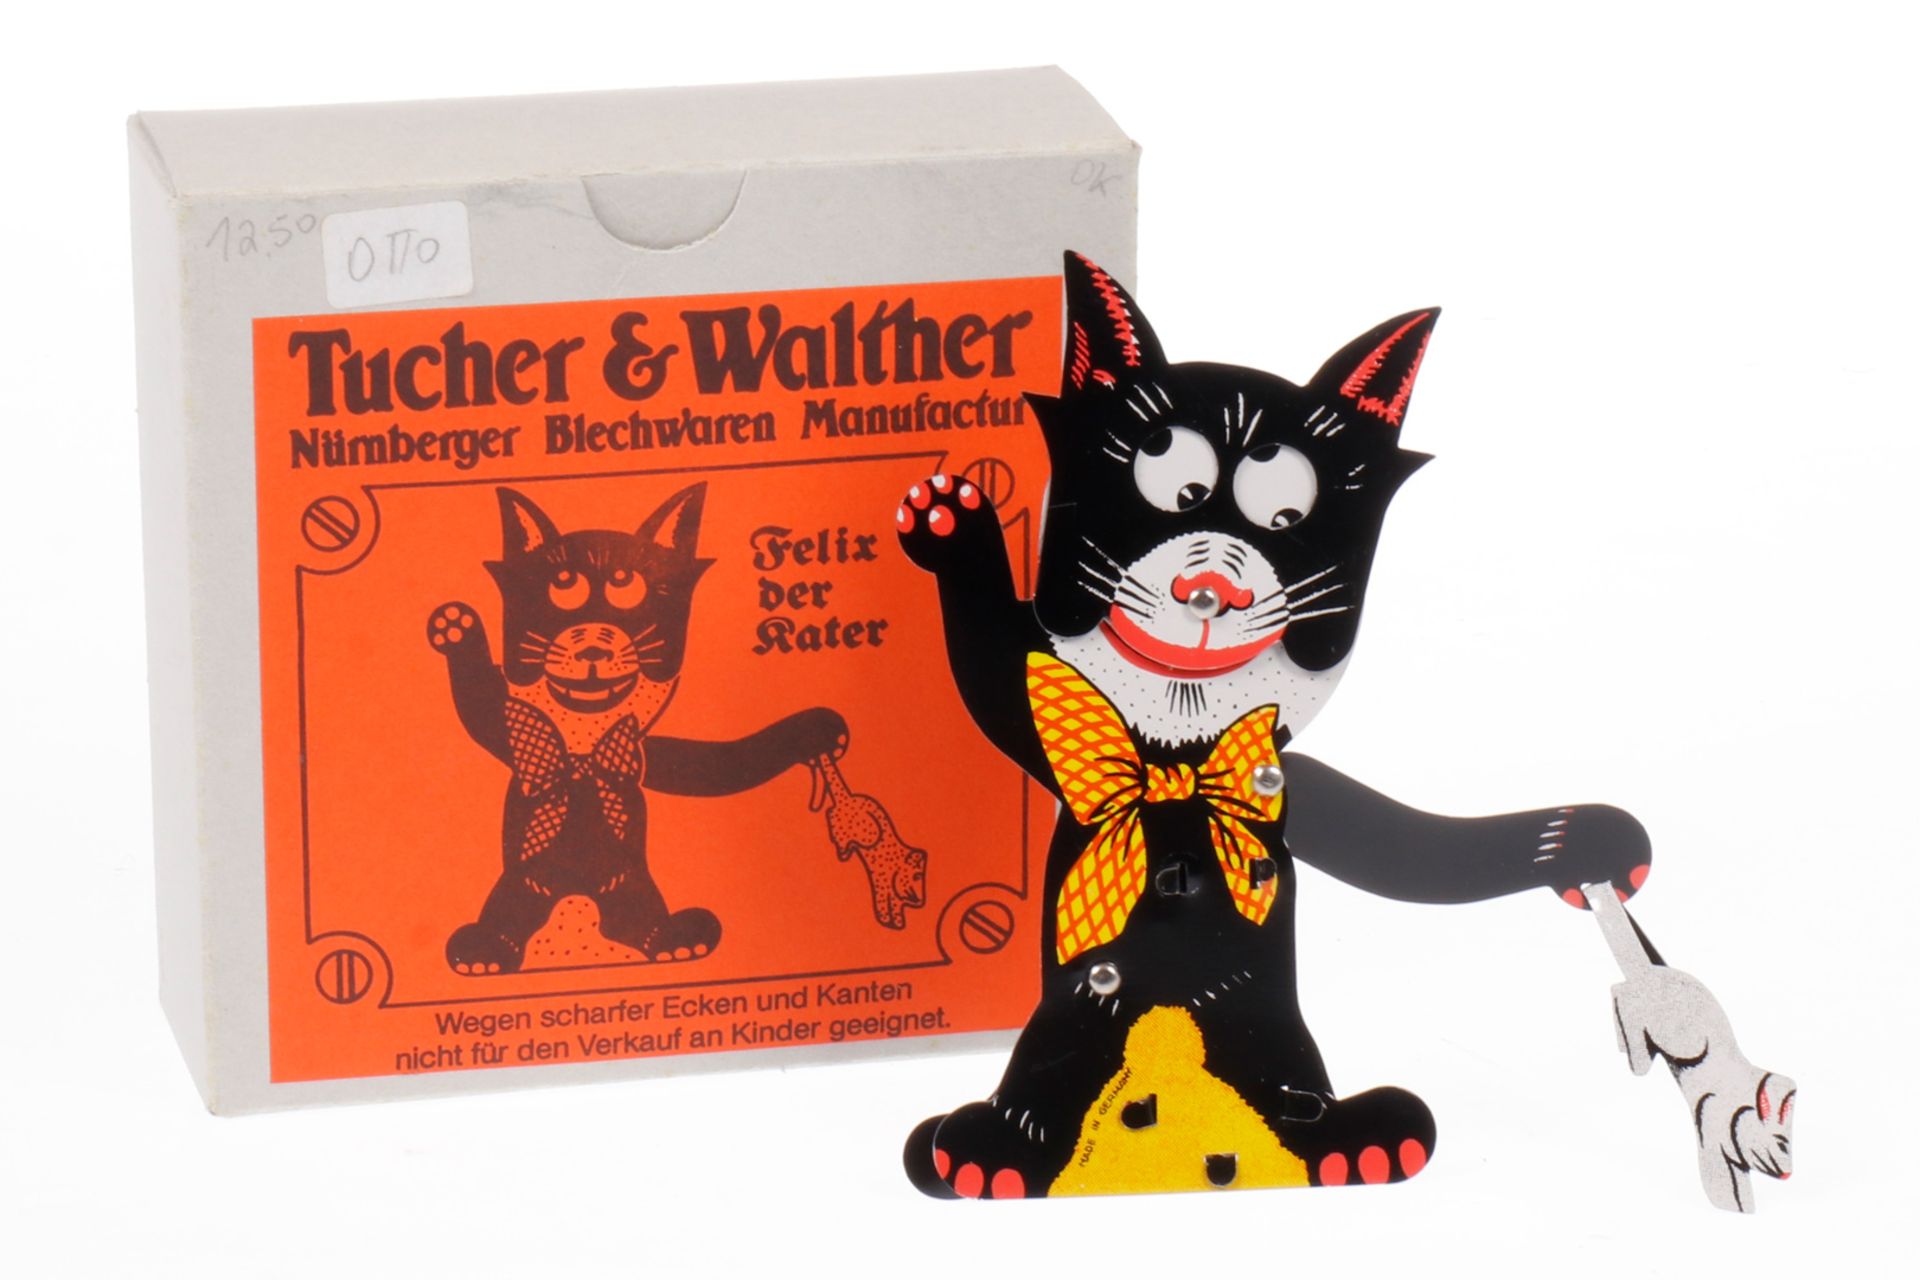 Tucher & Walther Kater ”Felix” Handdrückspiel, Blech, Chromlithographie, H 11,5, Originalkarton, Z